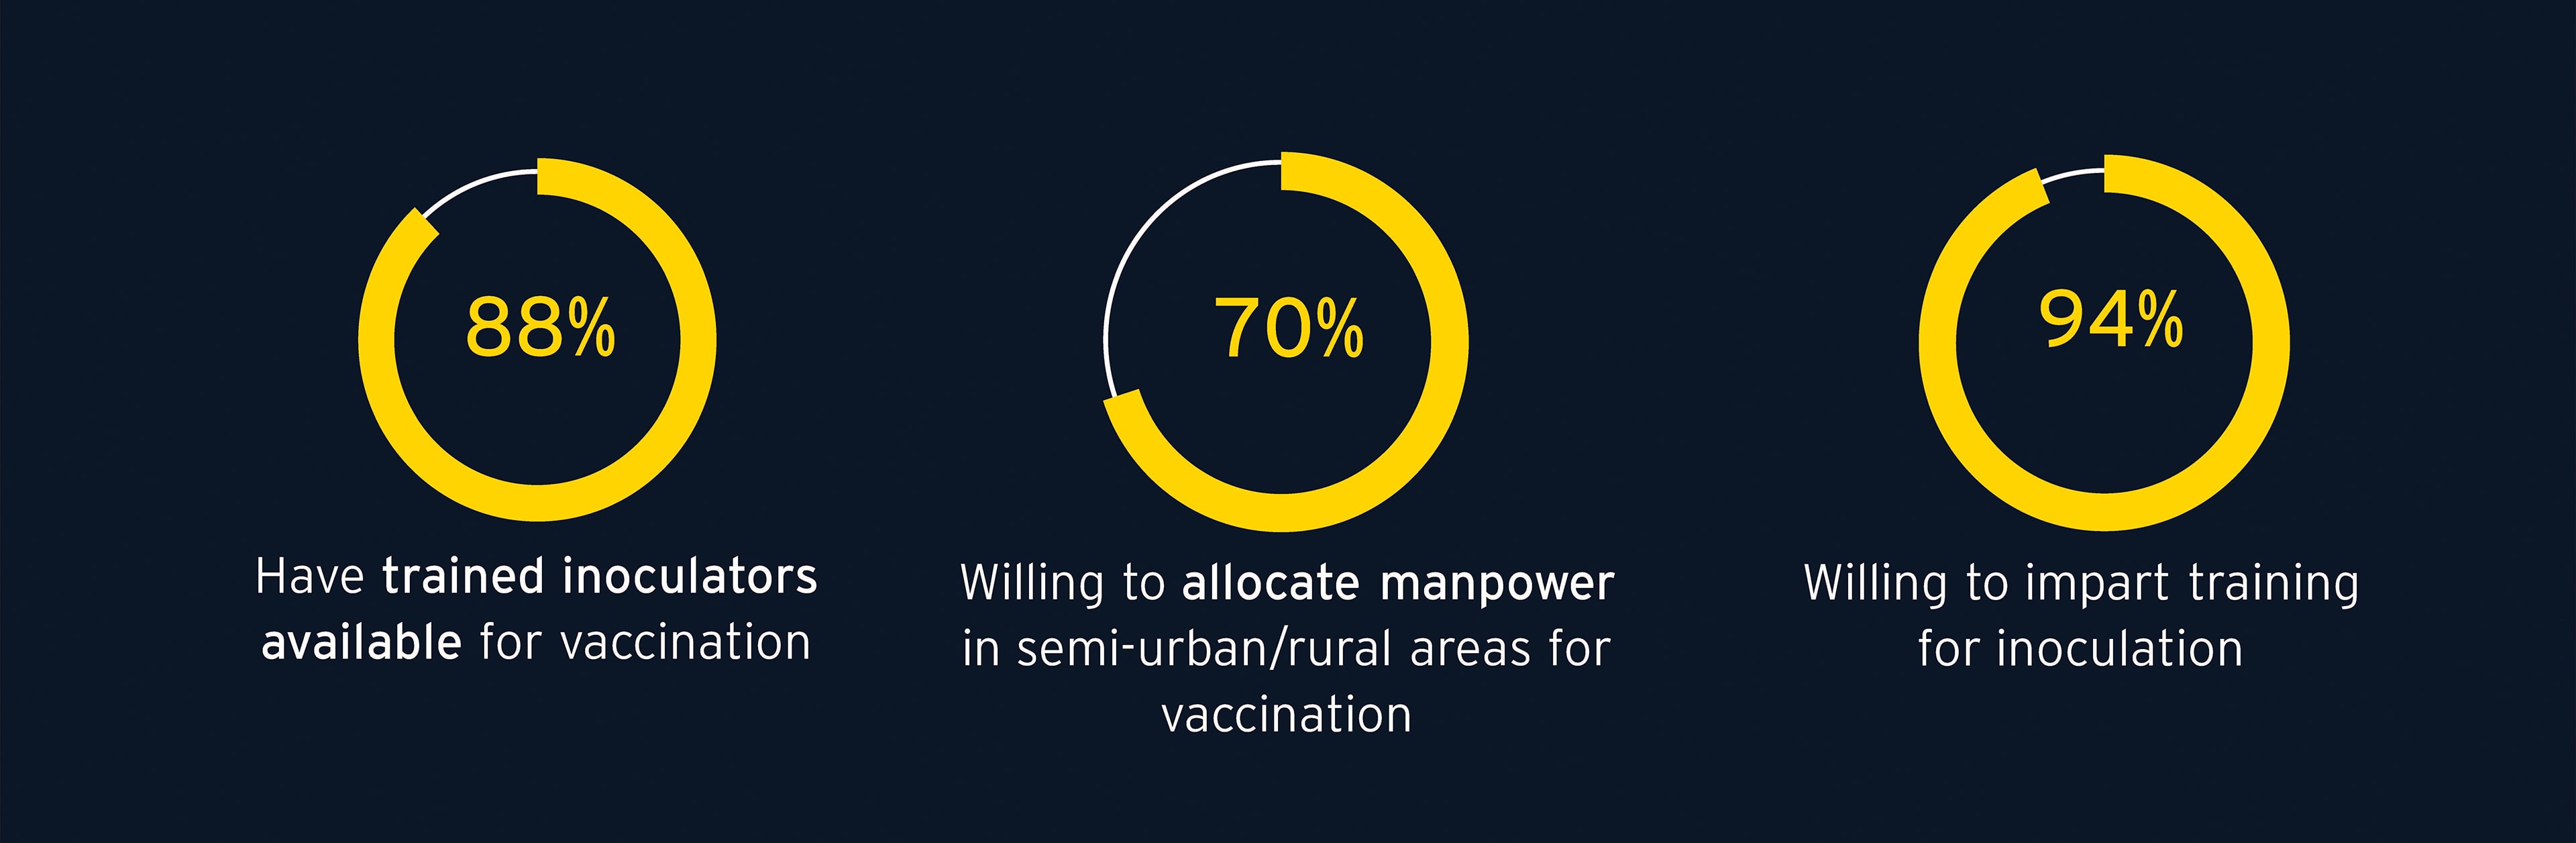 Manpower allocation - COVID-19 vaccination survey of private healthcare